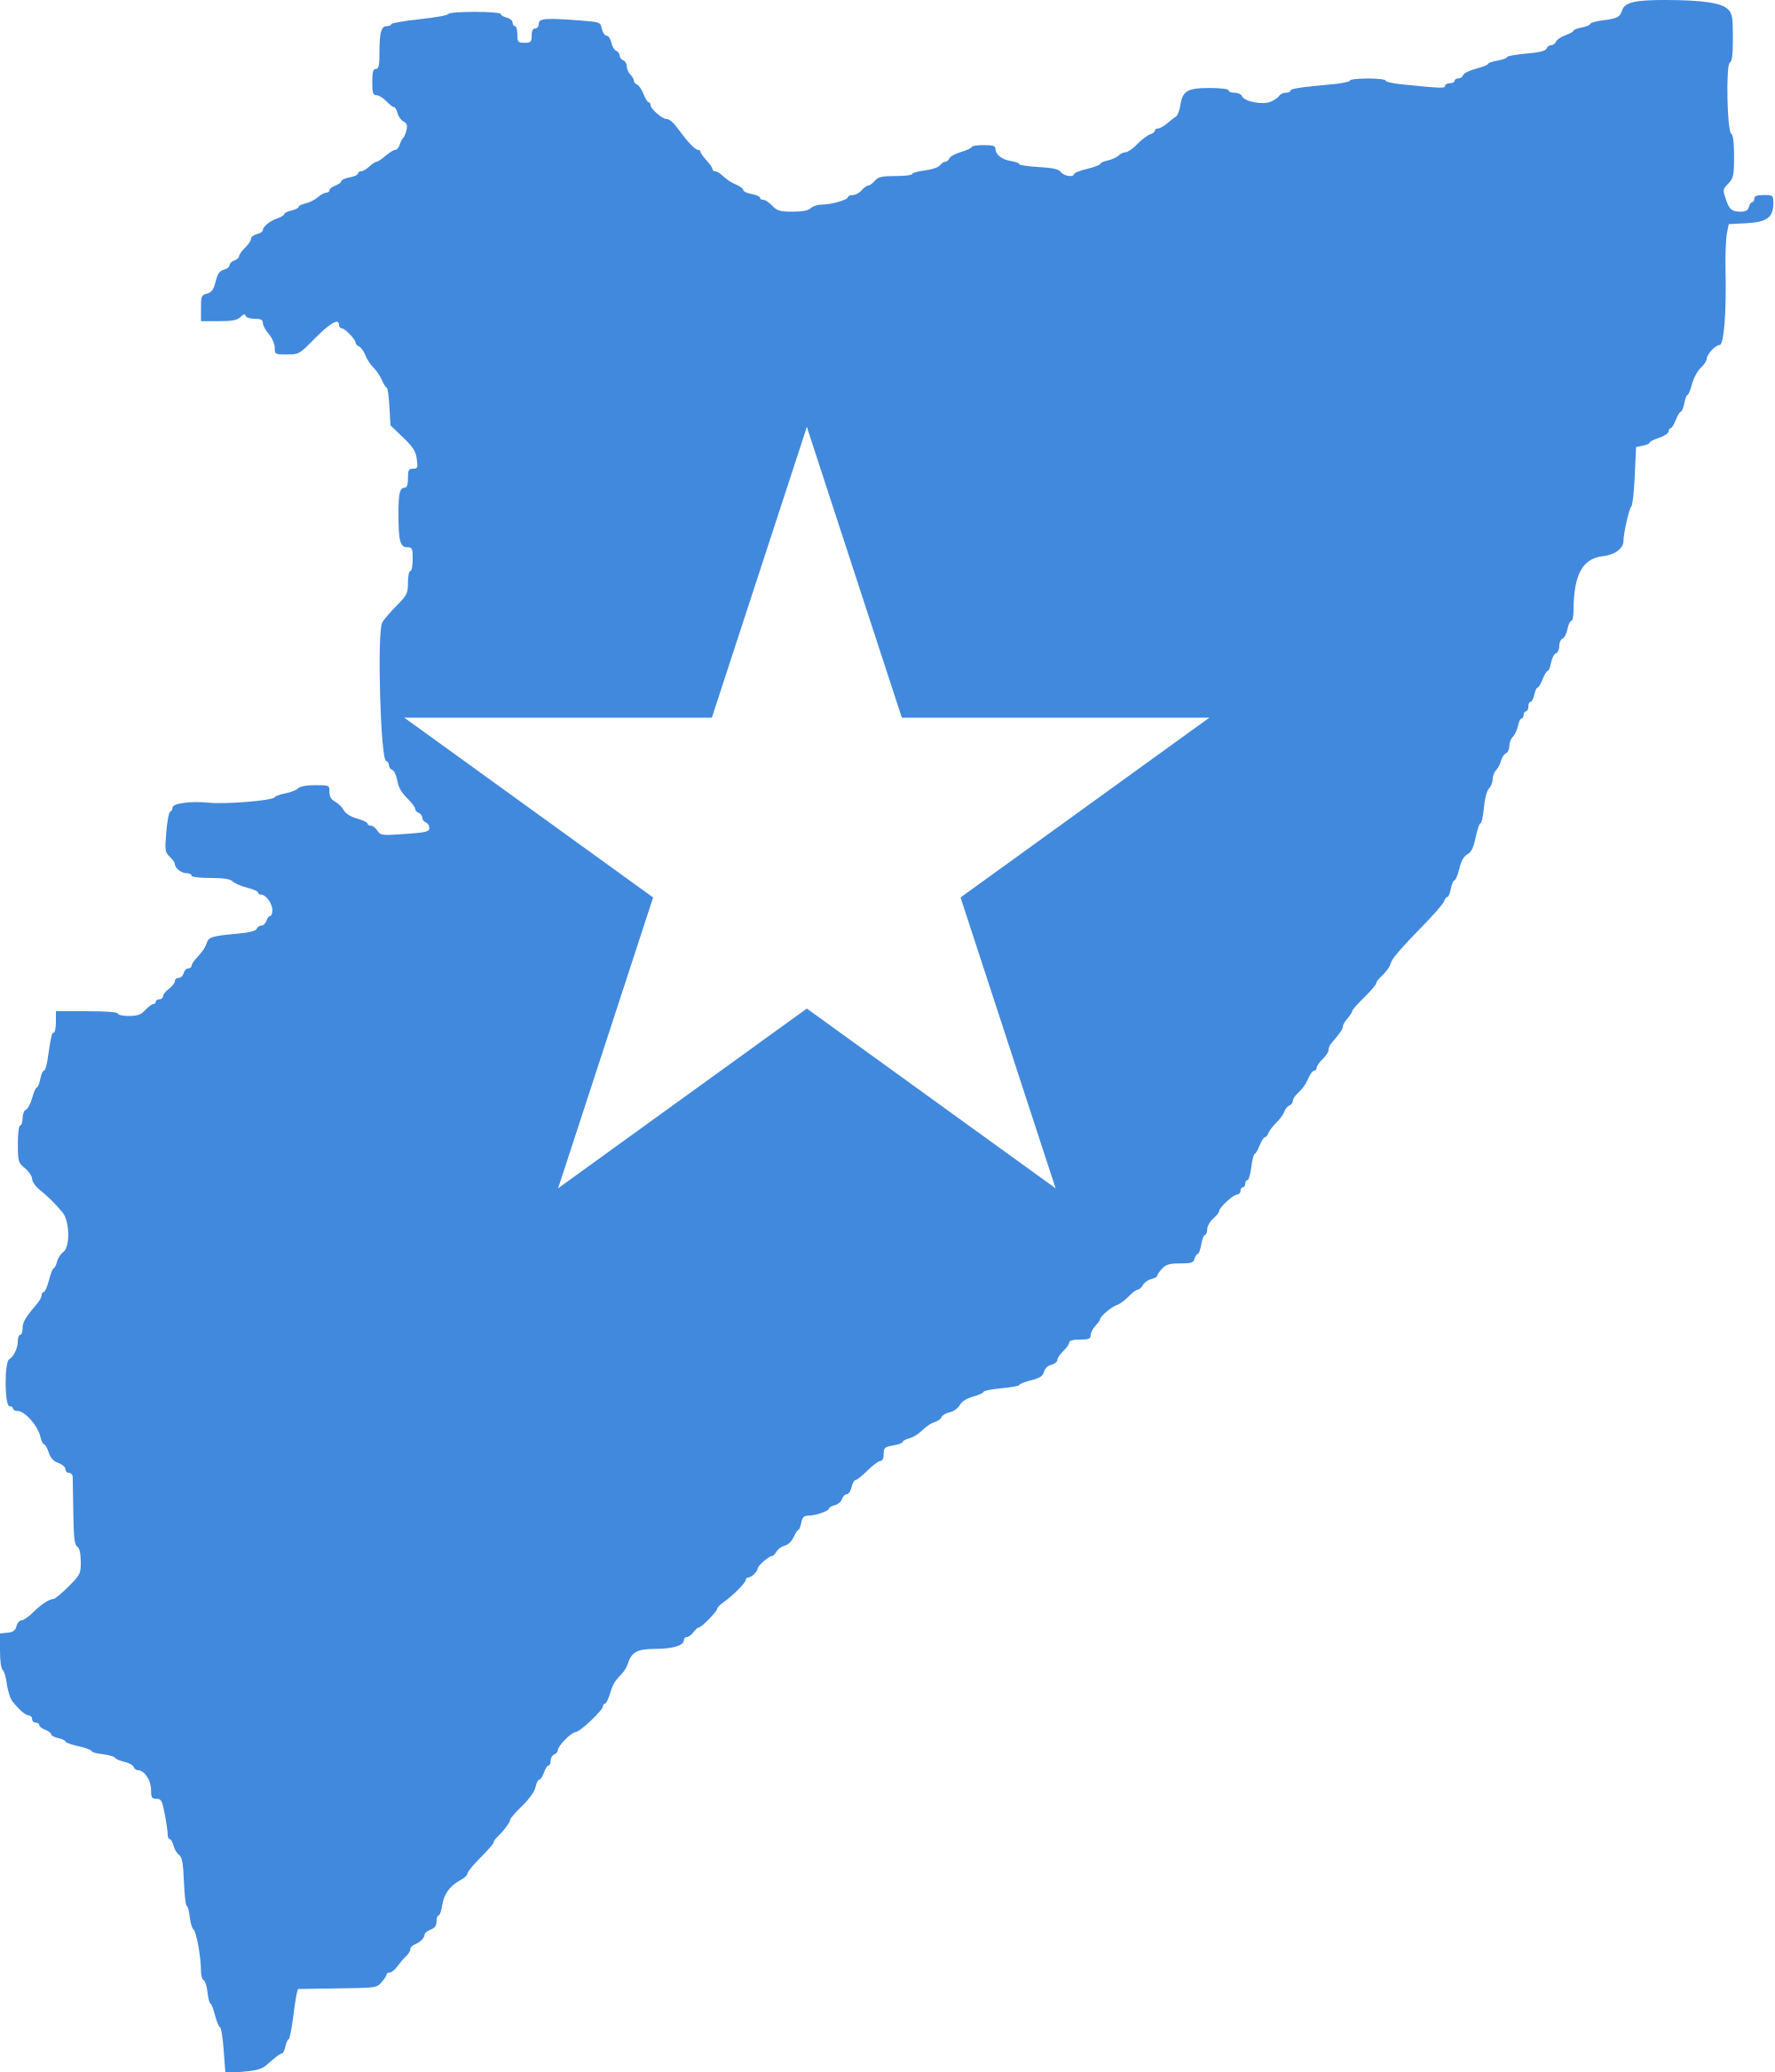 Somalia Flag Png Isolated Image